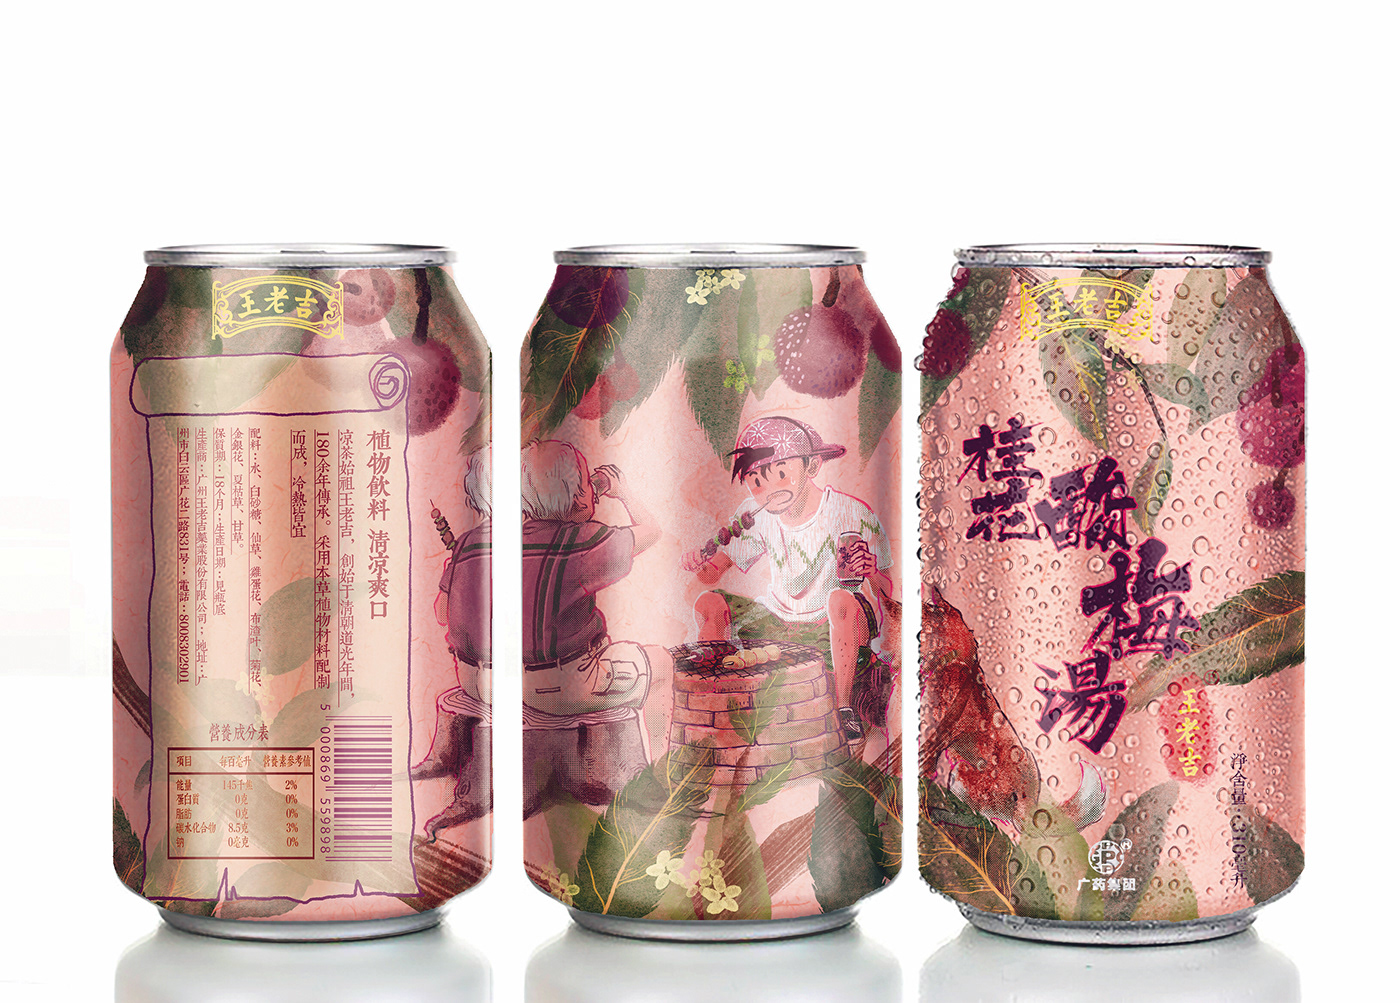 beverage can design Packaging cans ILLUSTRATION  Advertising  digital illustration